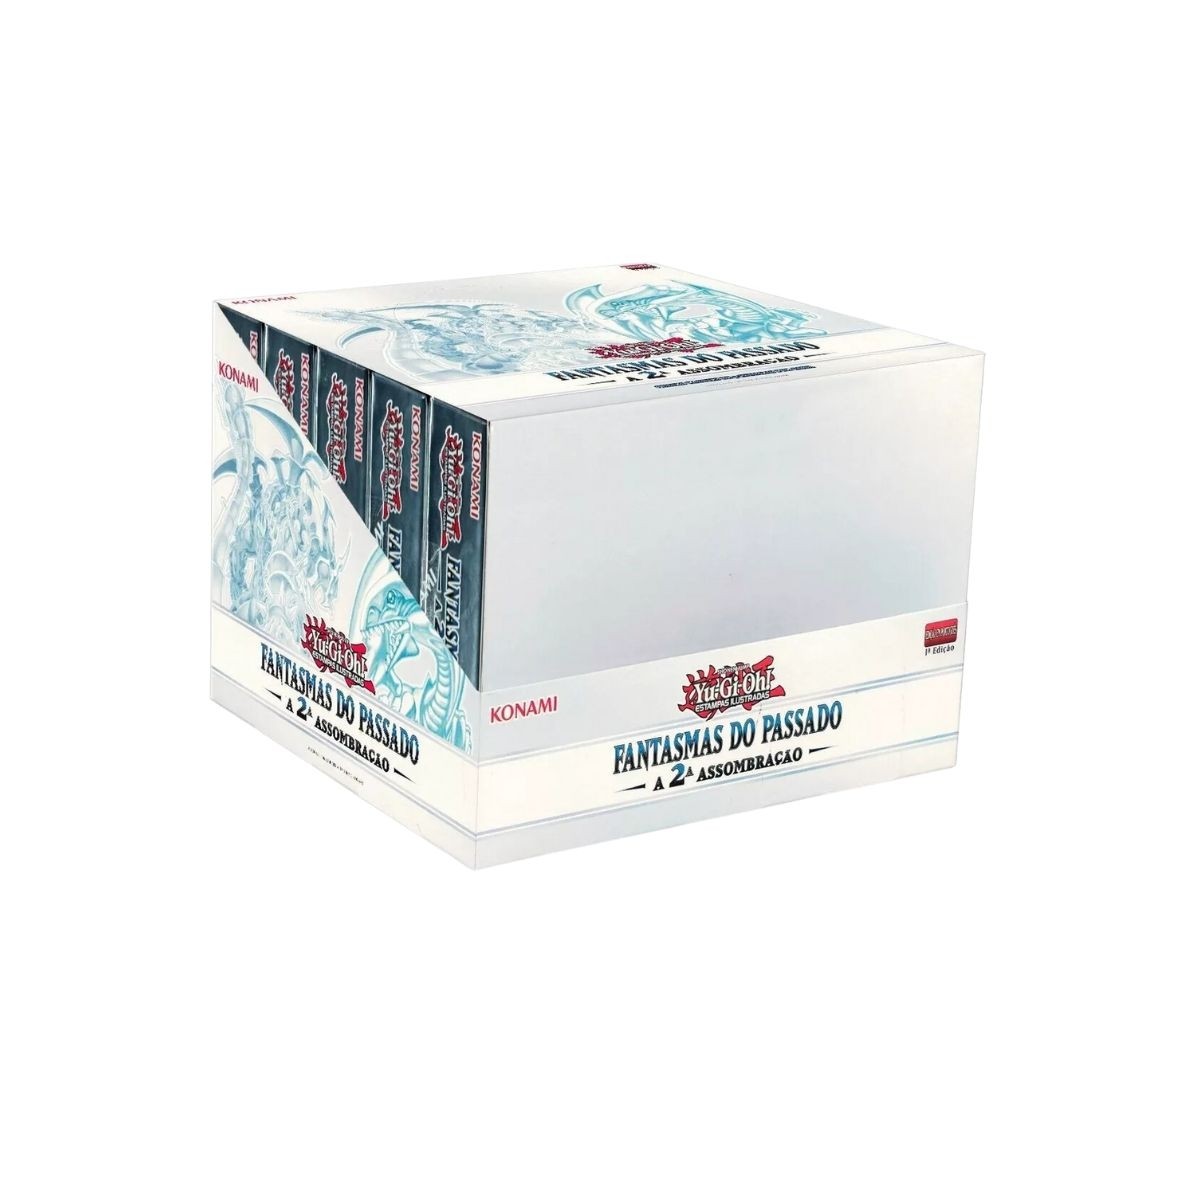 Yu-Gi-Oh! Caixa Box Fantasmas do Passado 2 Assombração   Konami Cards